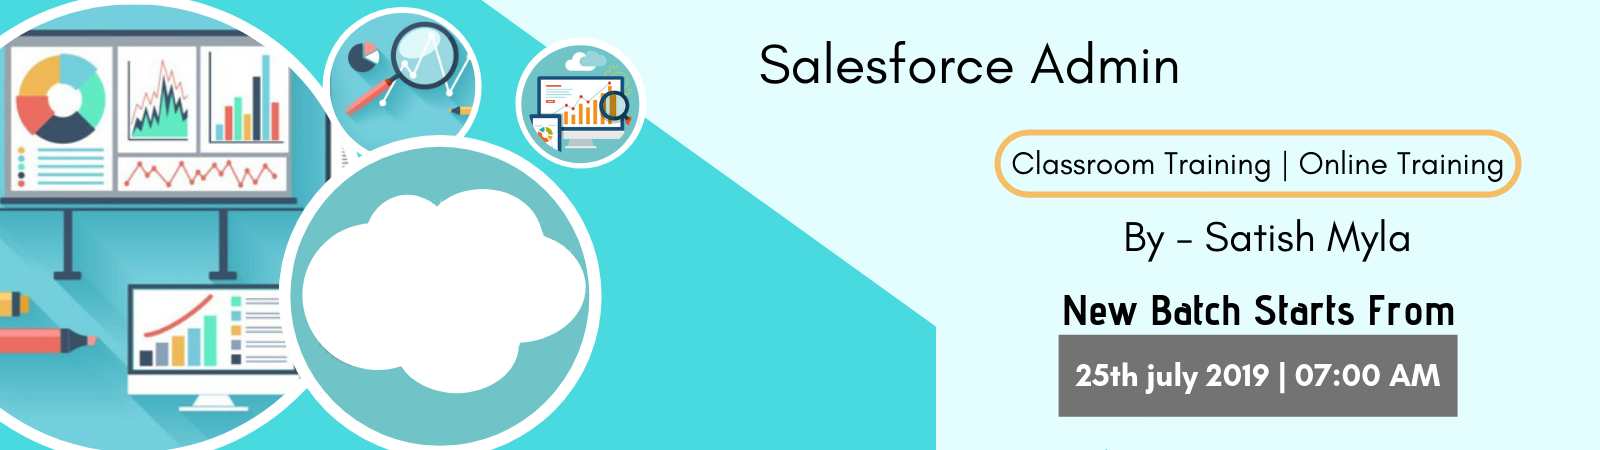 Salesforce Training in Hyderabad | Salesforce Online Training India